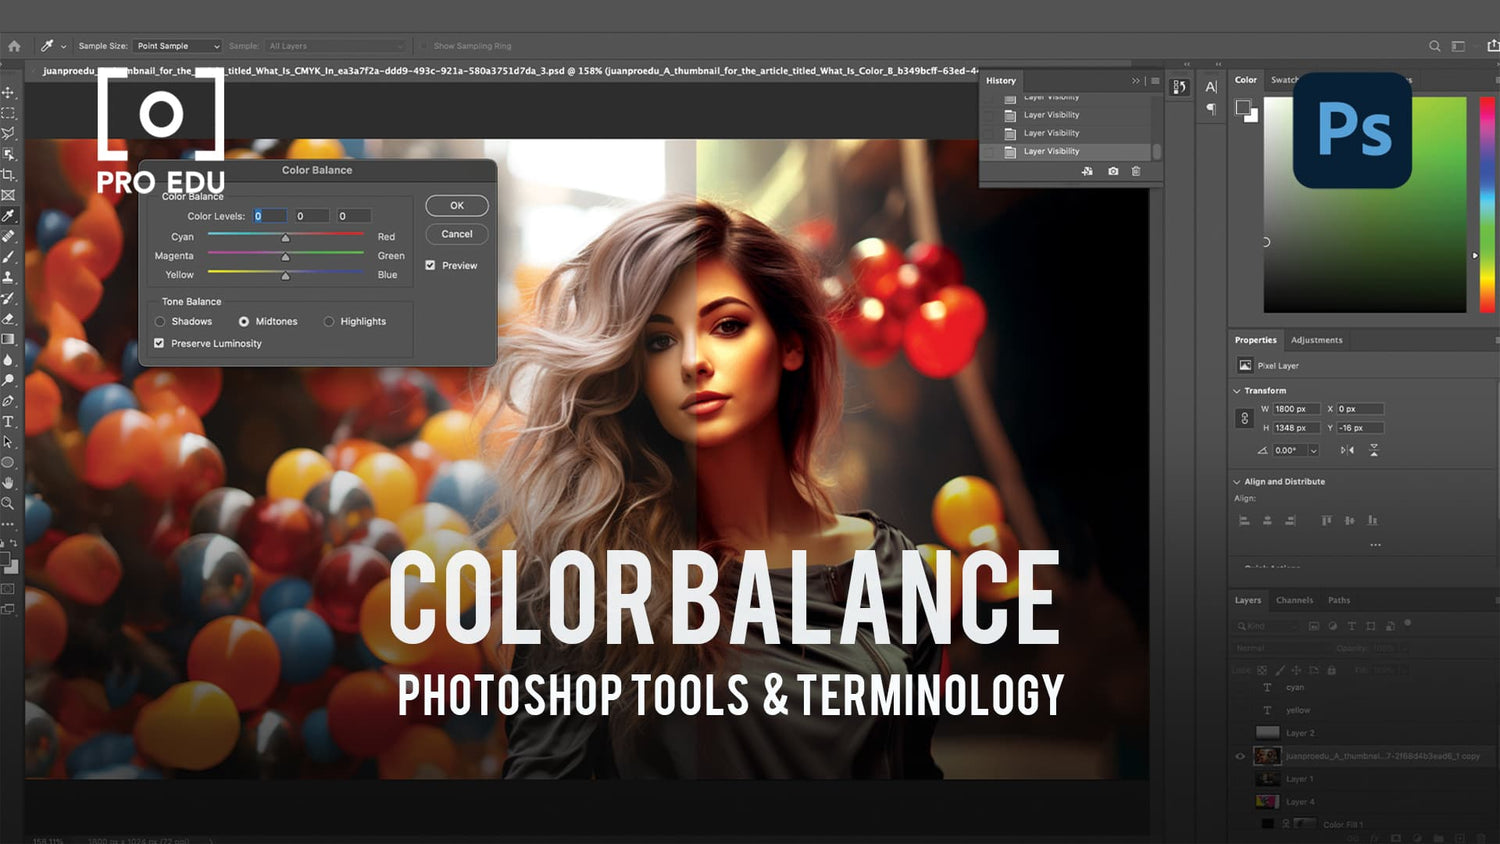 Color Balance Techniques in Photoshop - PRO EDU Tutorial